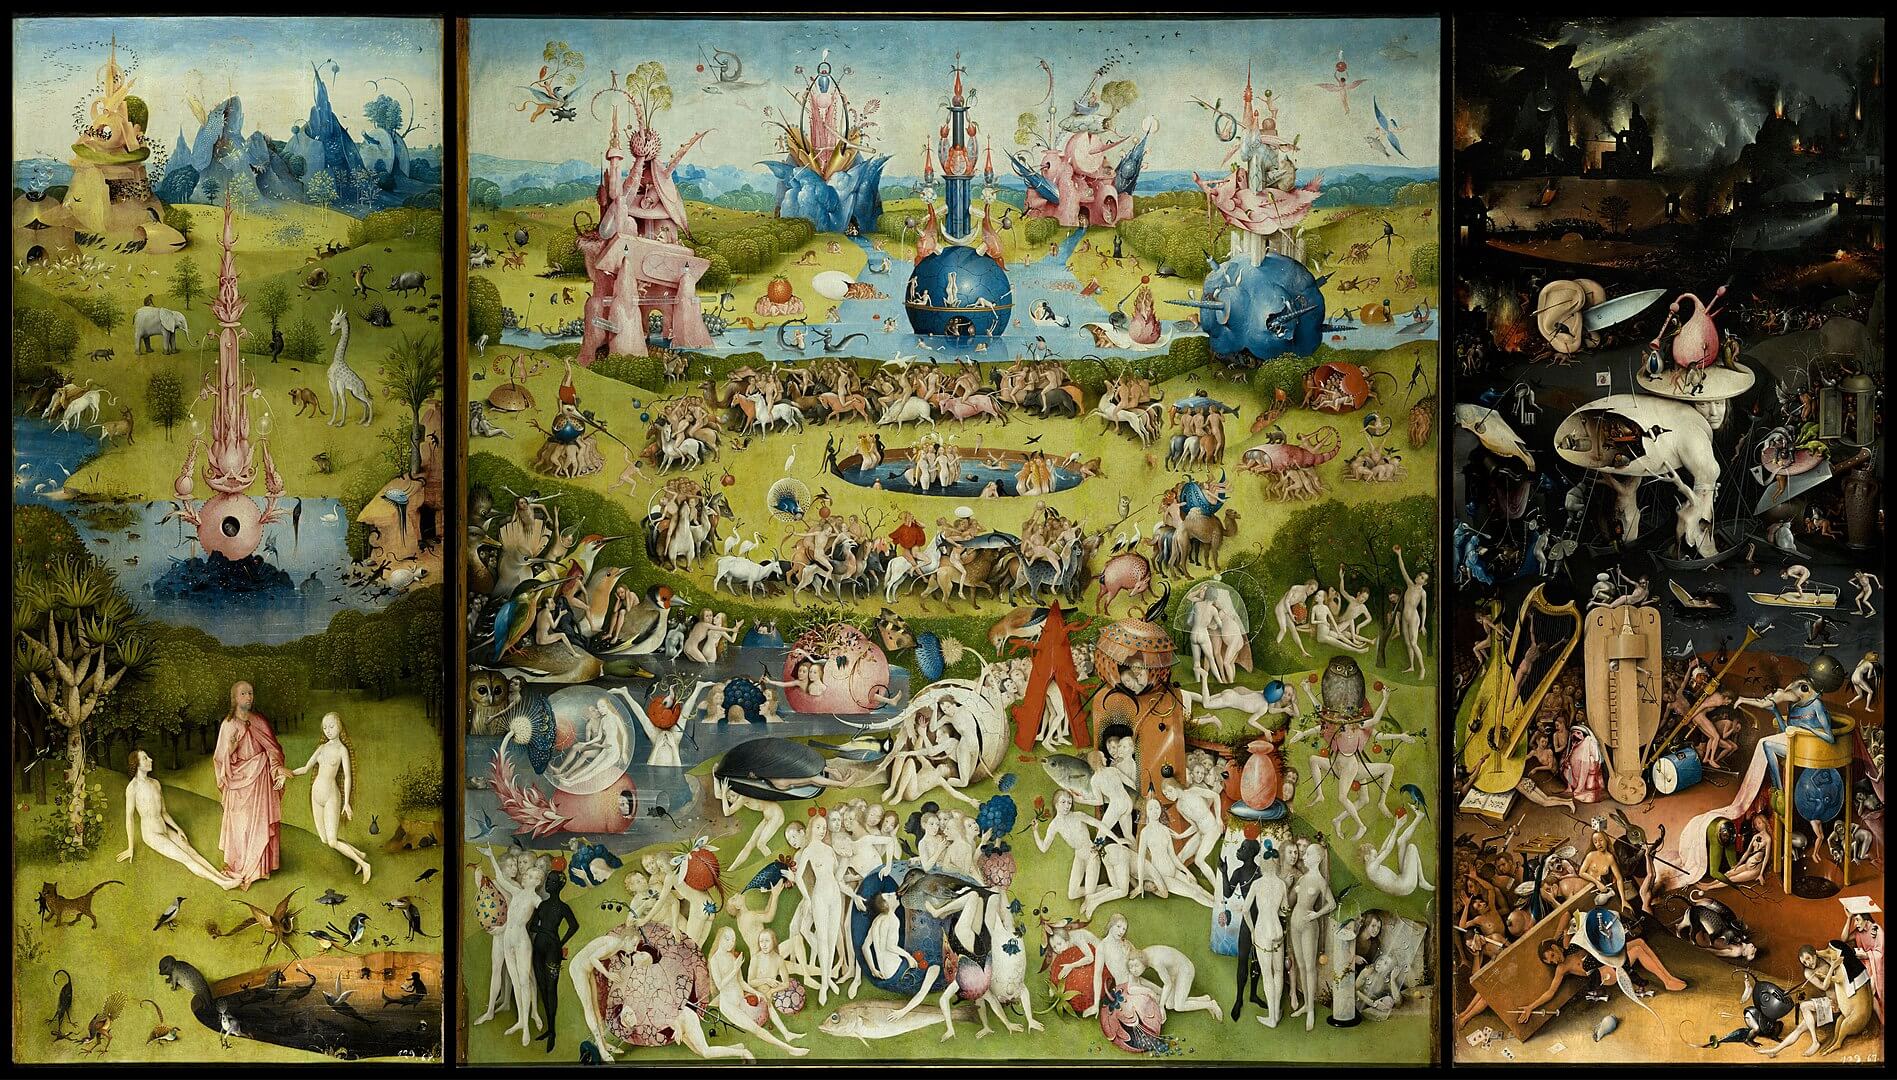 Prado Museum: "The Garden of Earthly Delights" - Hieronymus Bosch